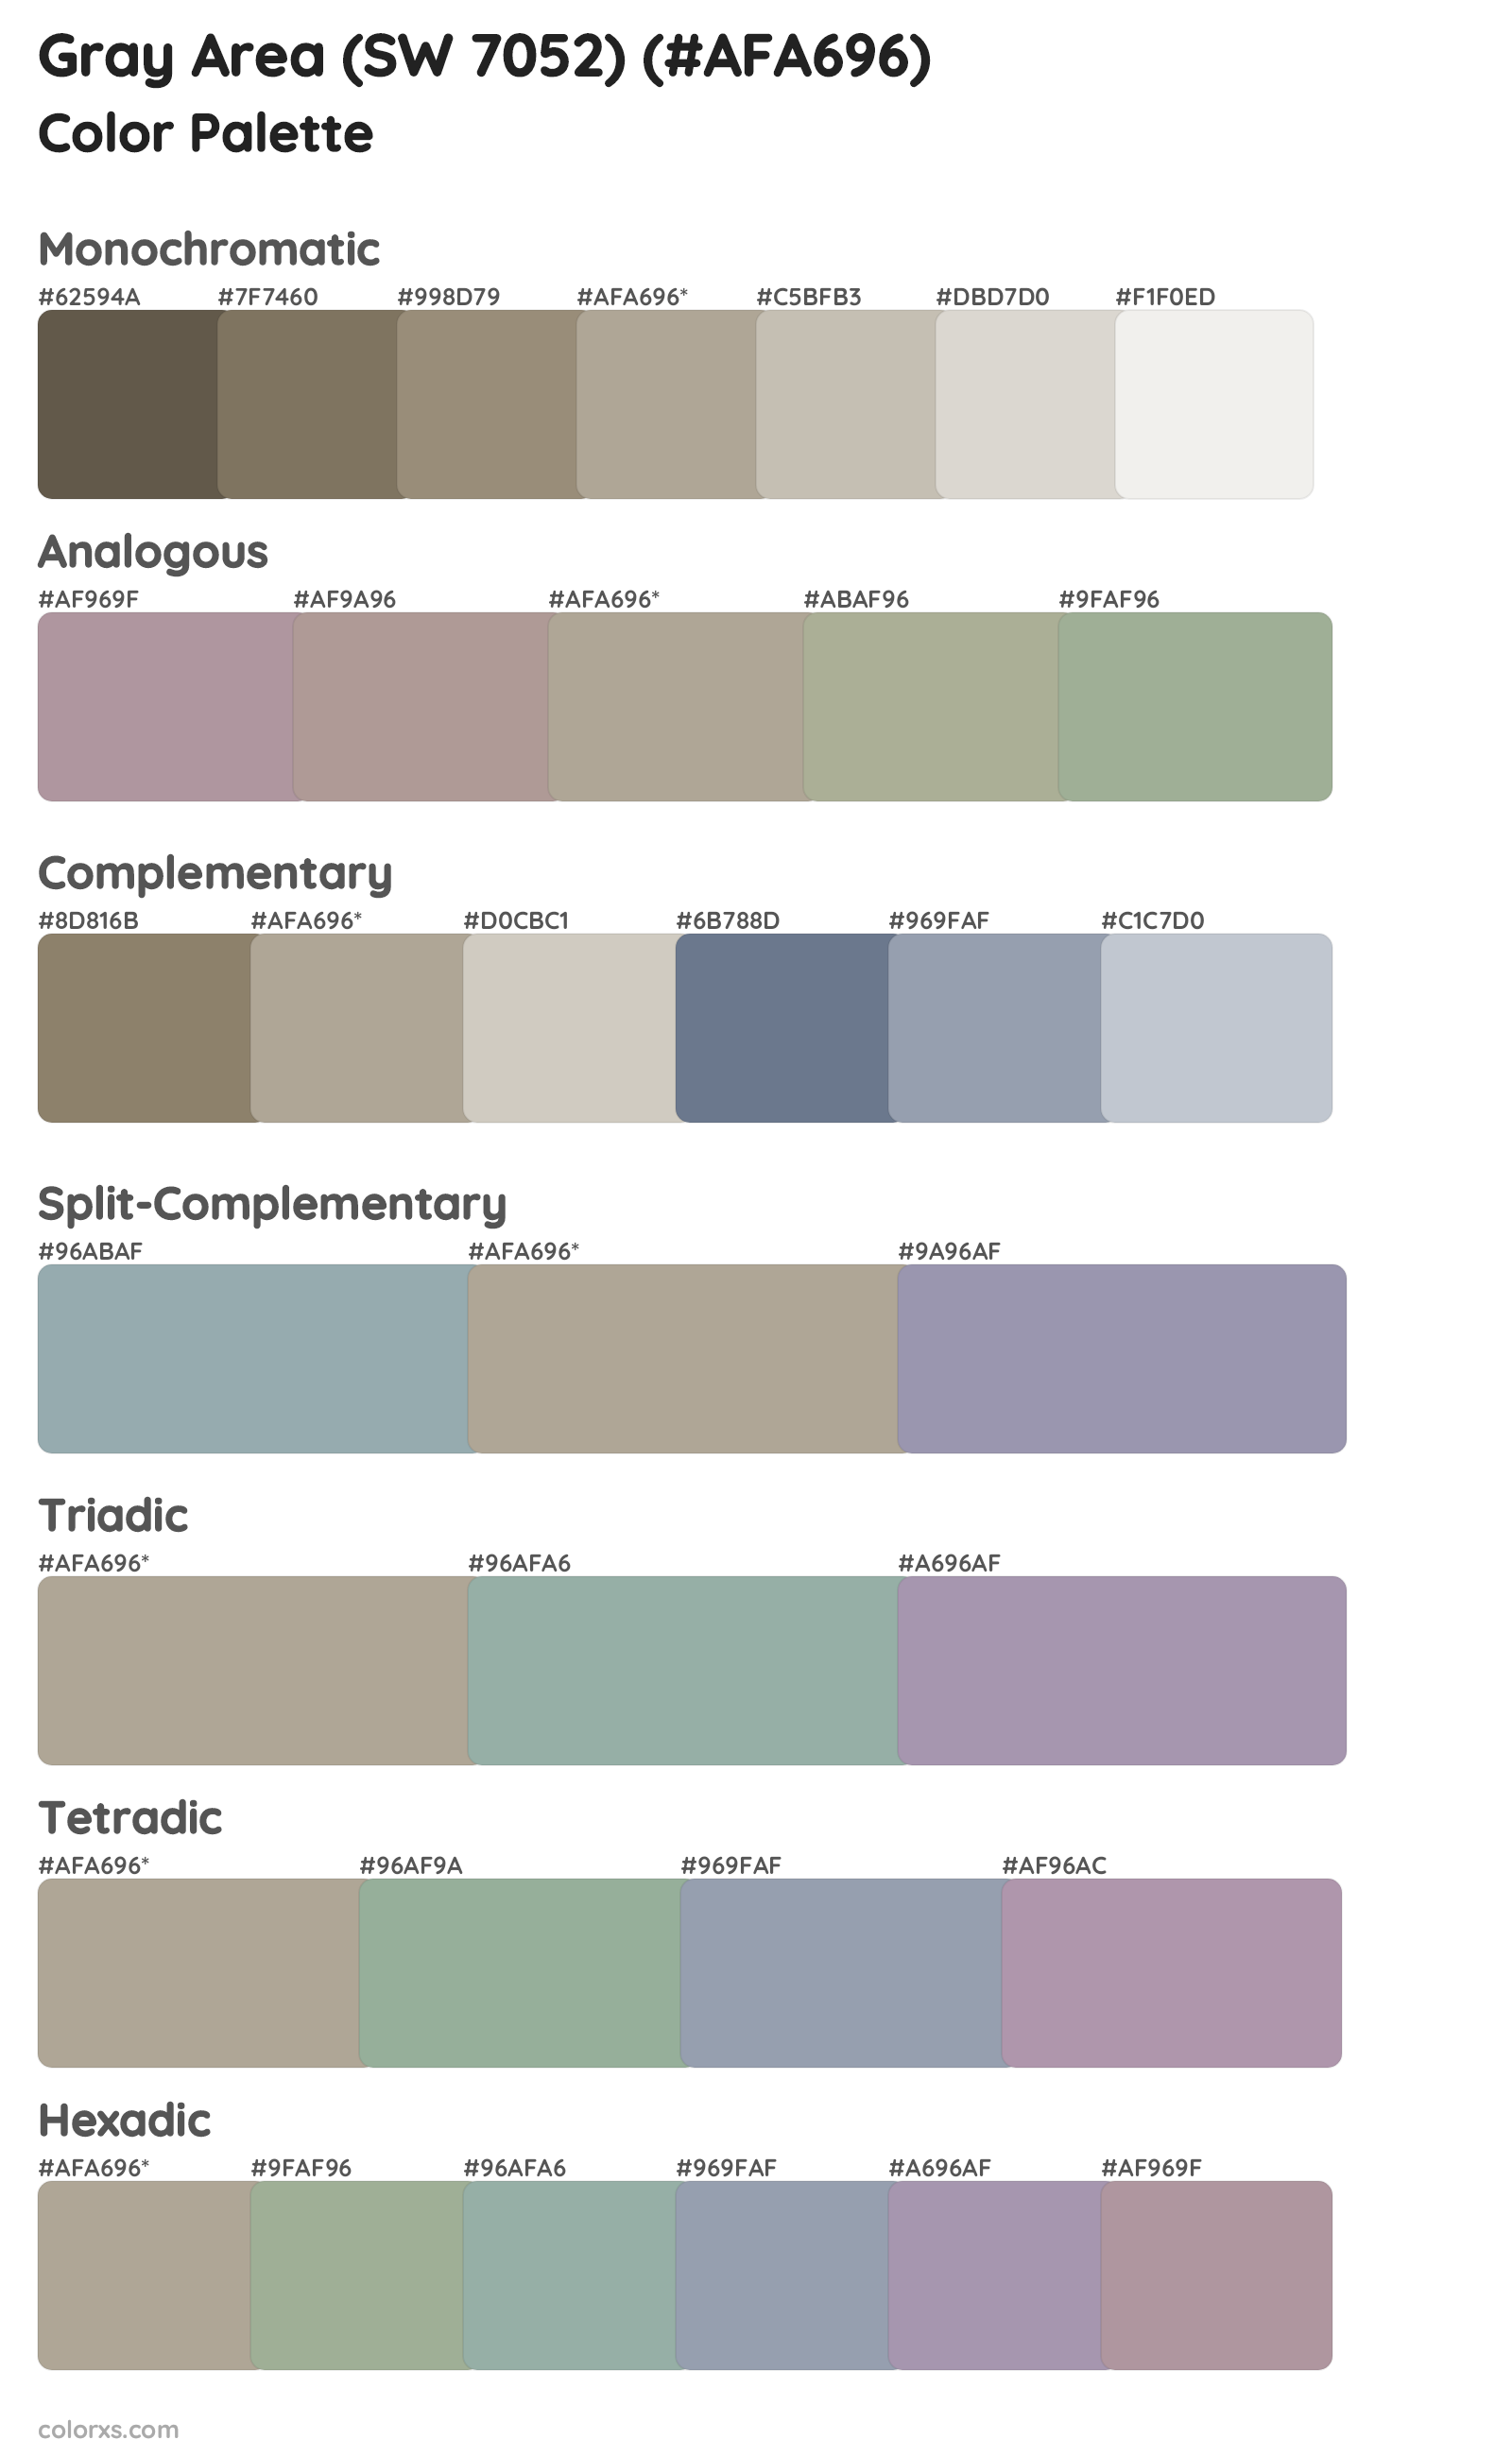 Gray Area (SW 7052) Color Scheme Palettes